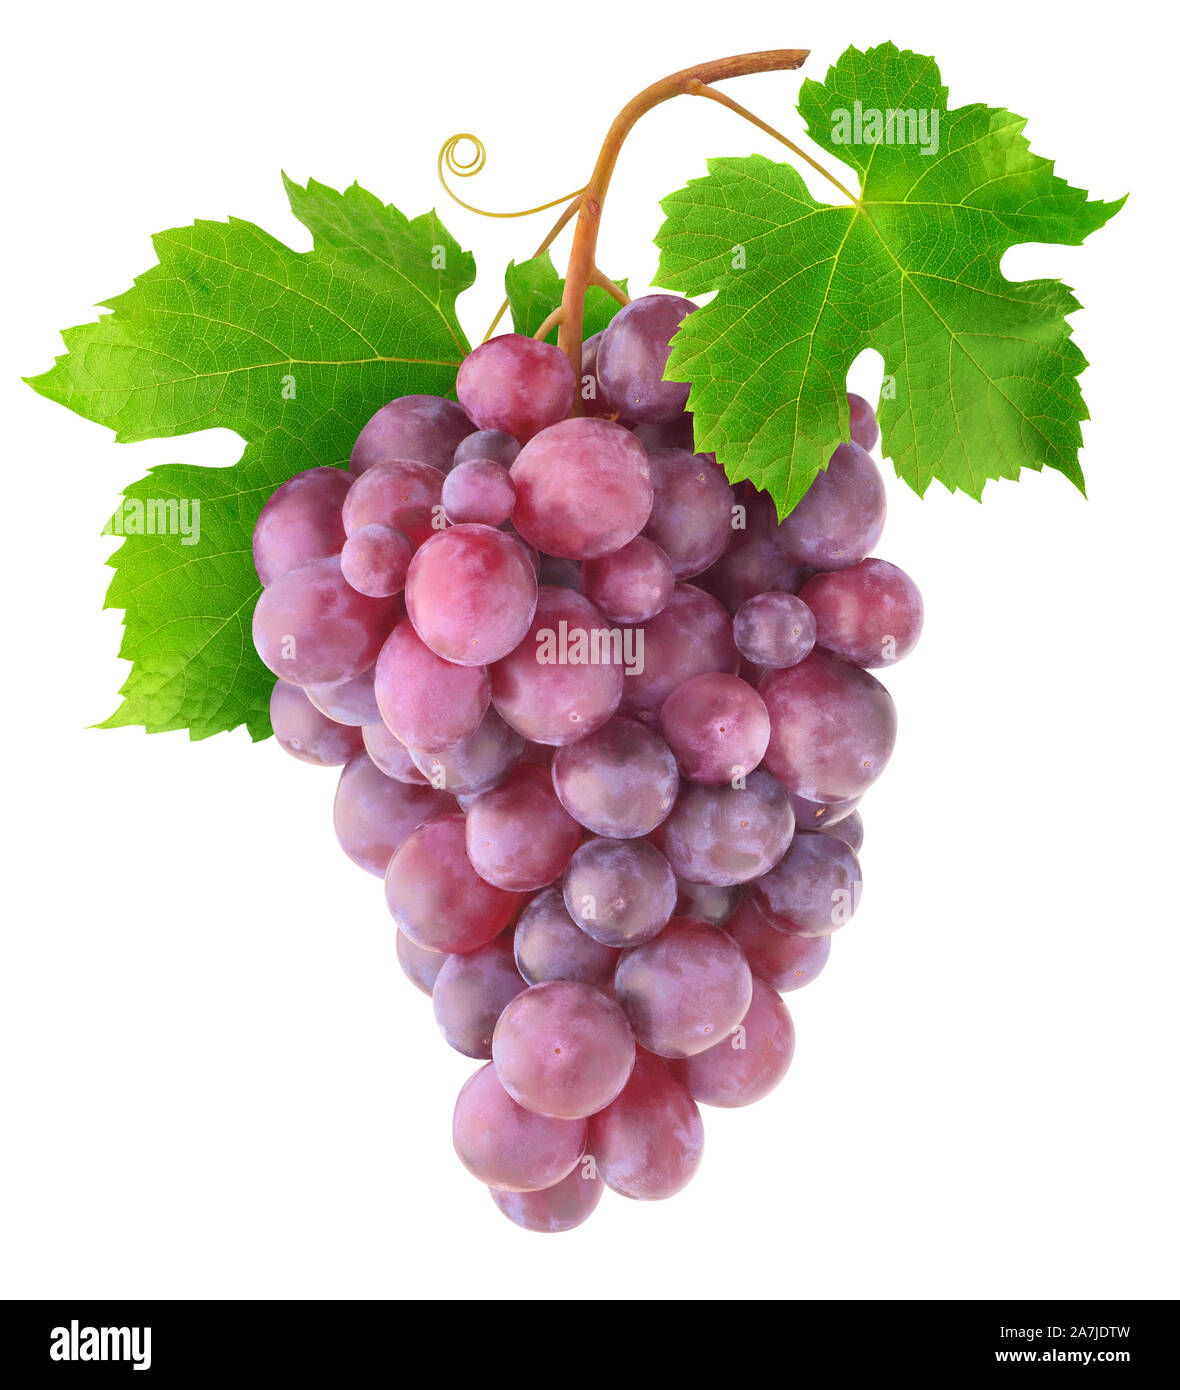 Isolati da uve a bacca rossa. Il ramo di vite con uva, foglie e viticci isolato su sfondo bianco con tracciato di ritaglio Foto Stock